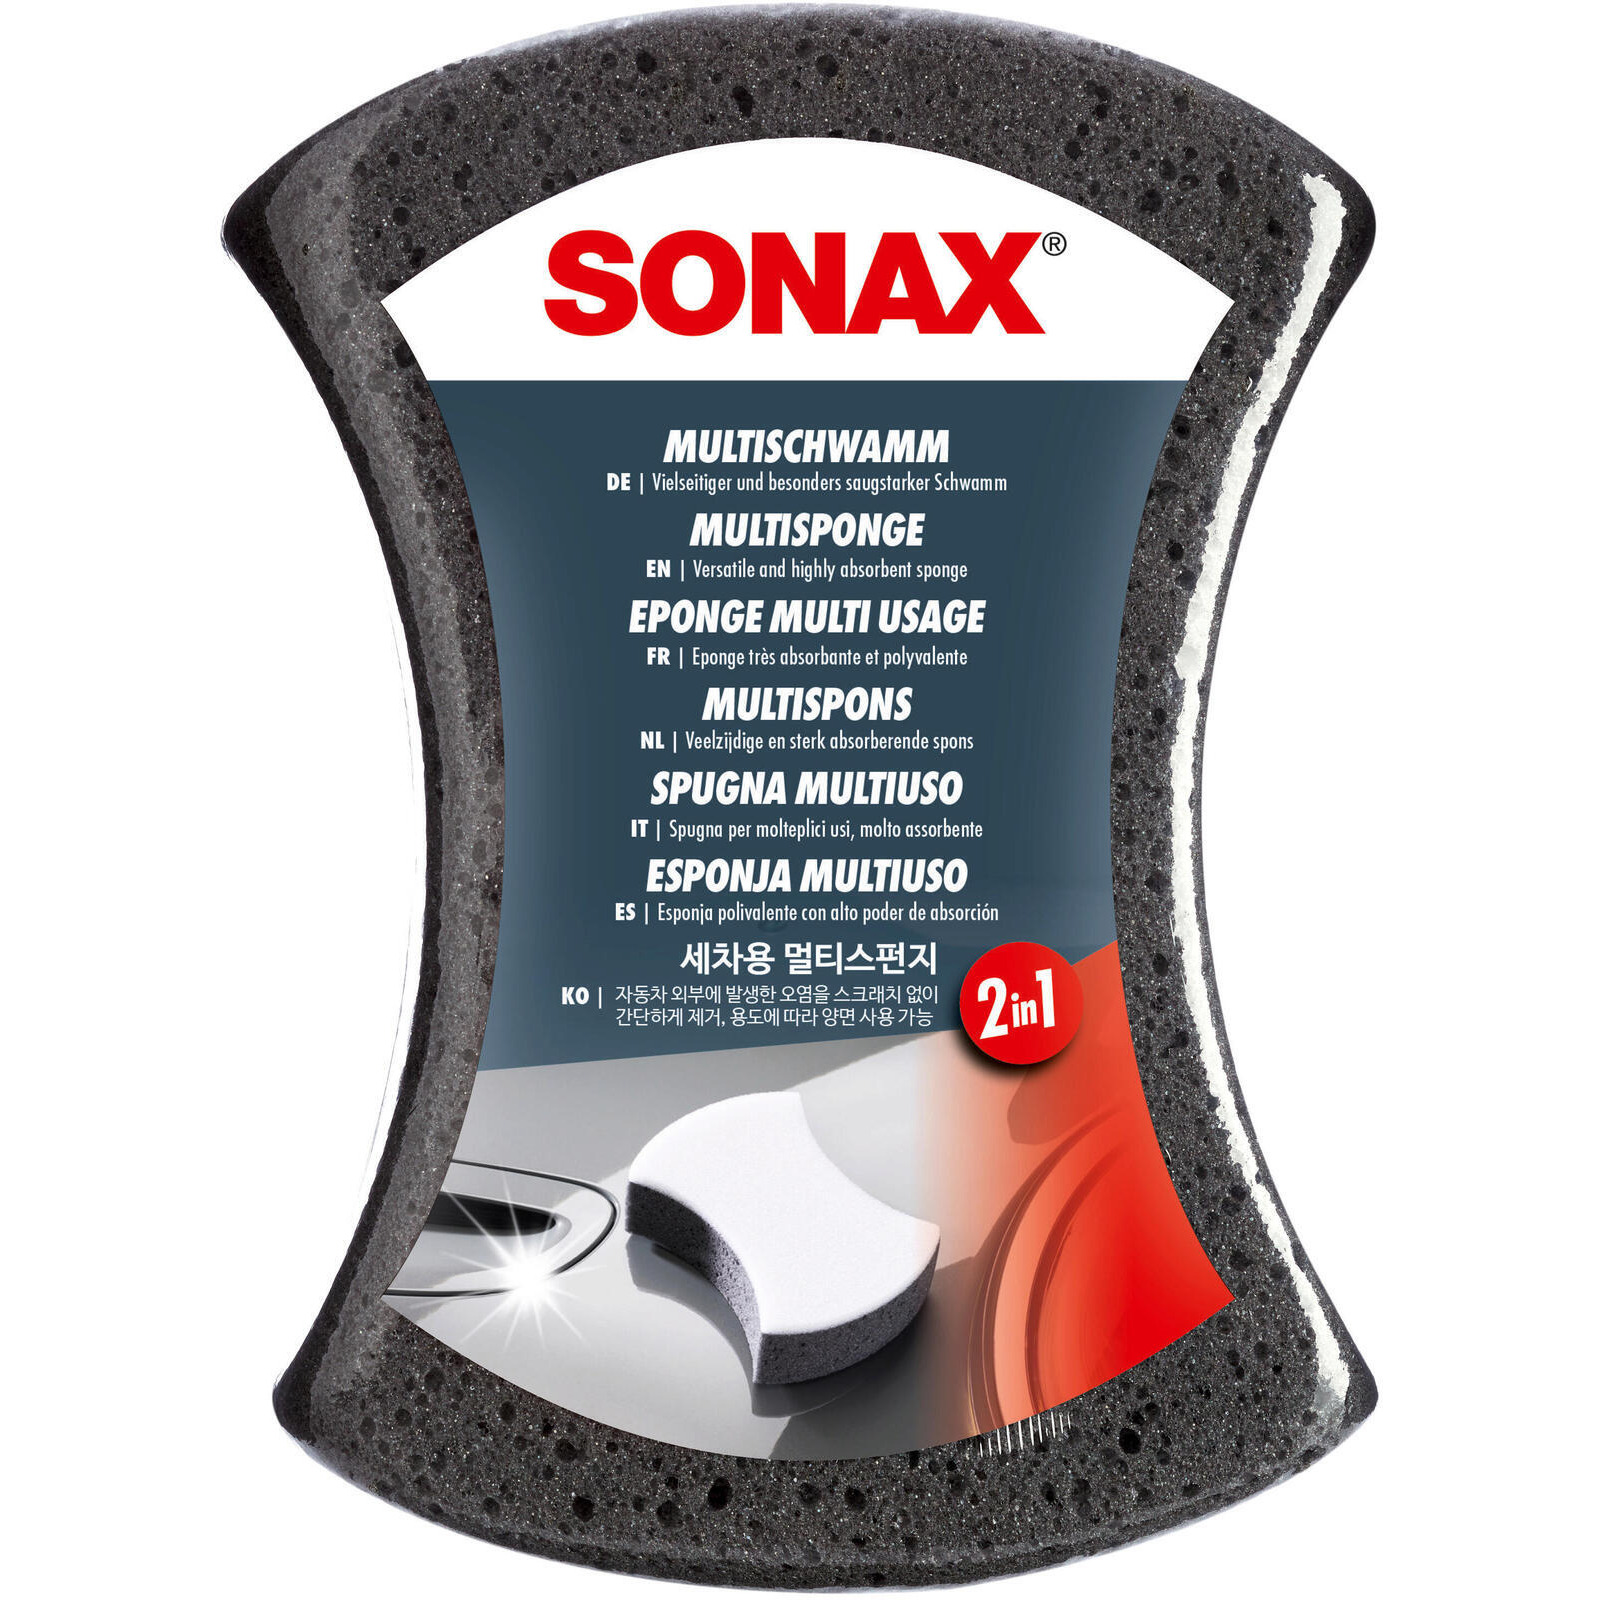 SONAX MultiSchwamm